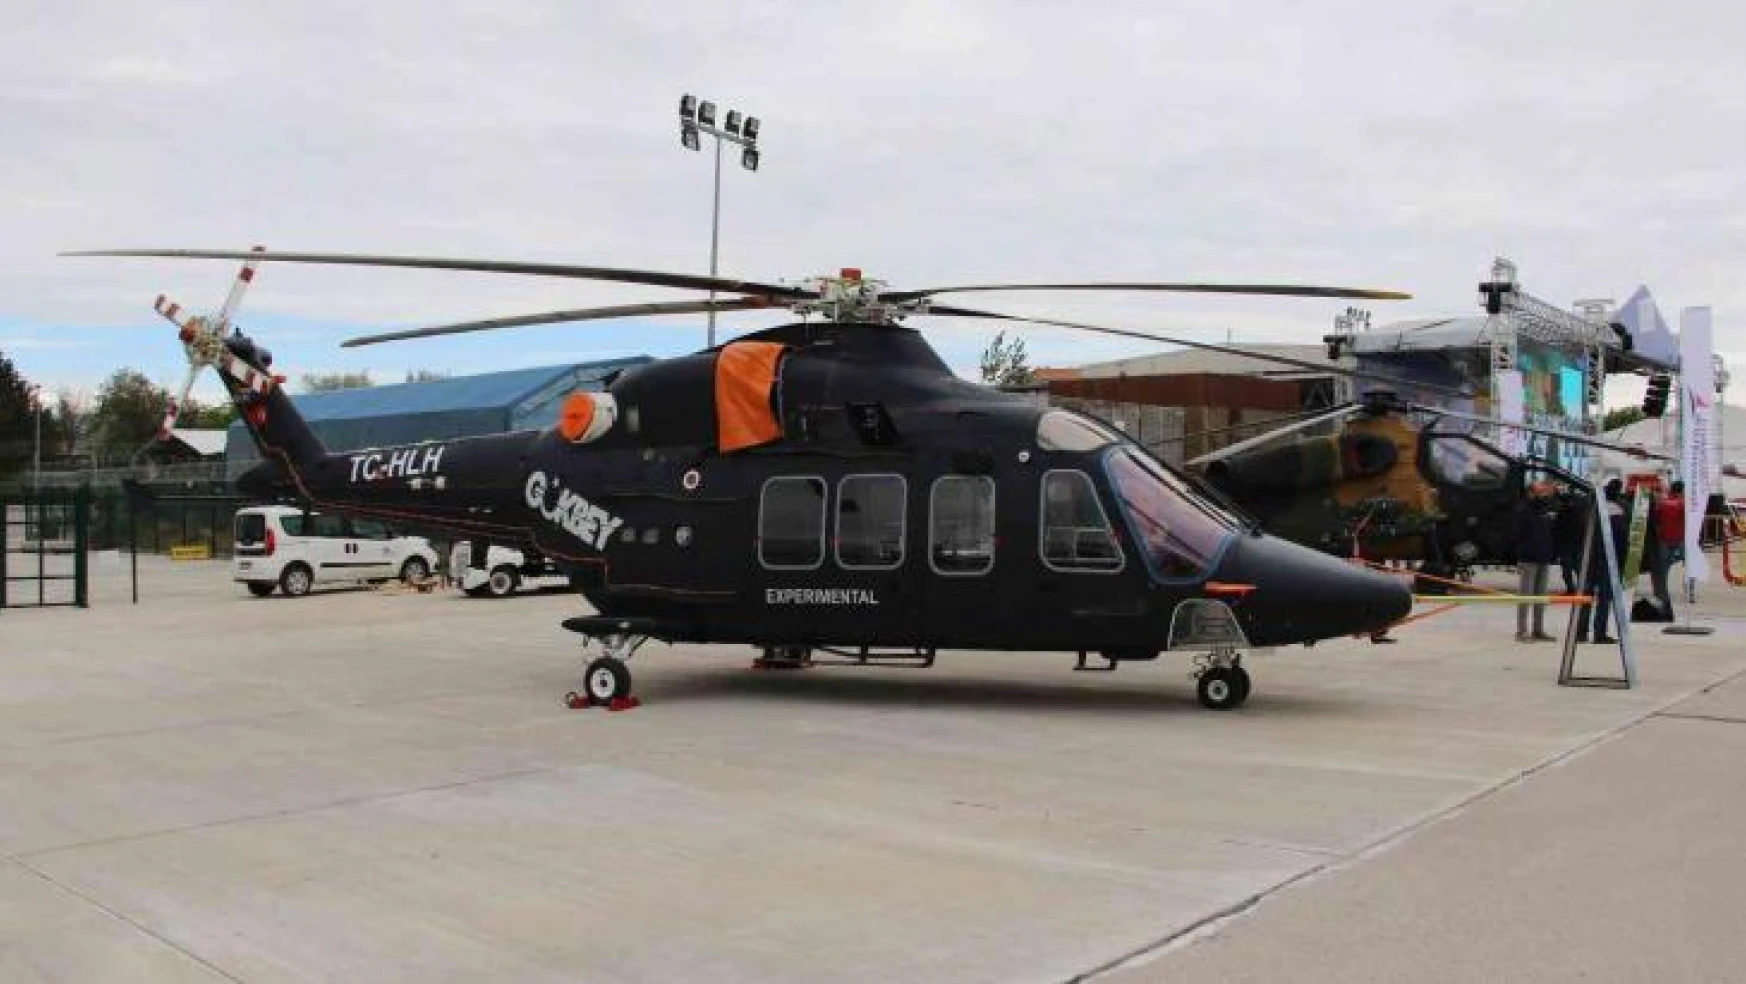 Yerli ve milli helikopter Gökbey'in 4'üncü prototipi ilk kez görüntülendi